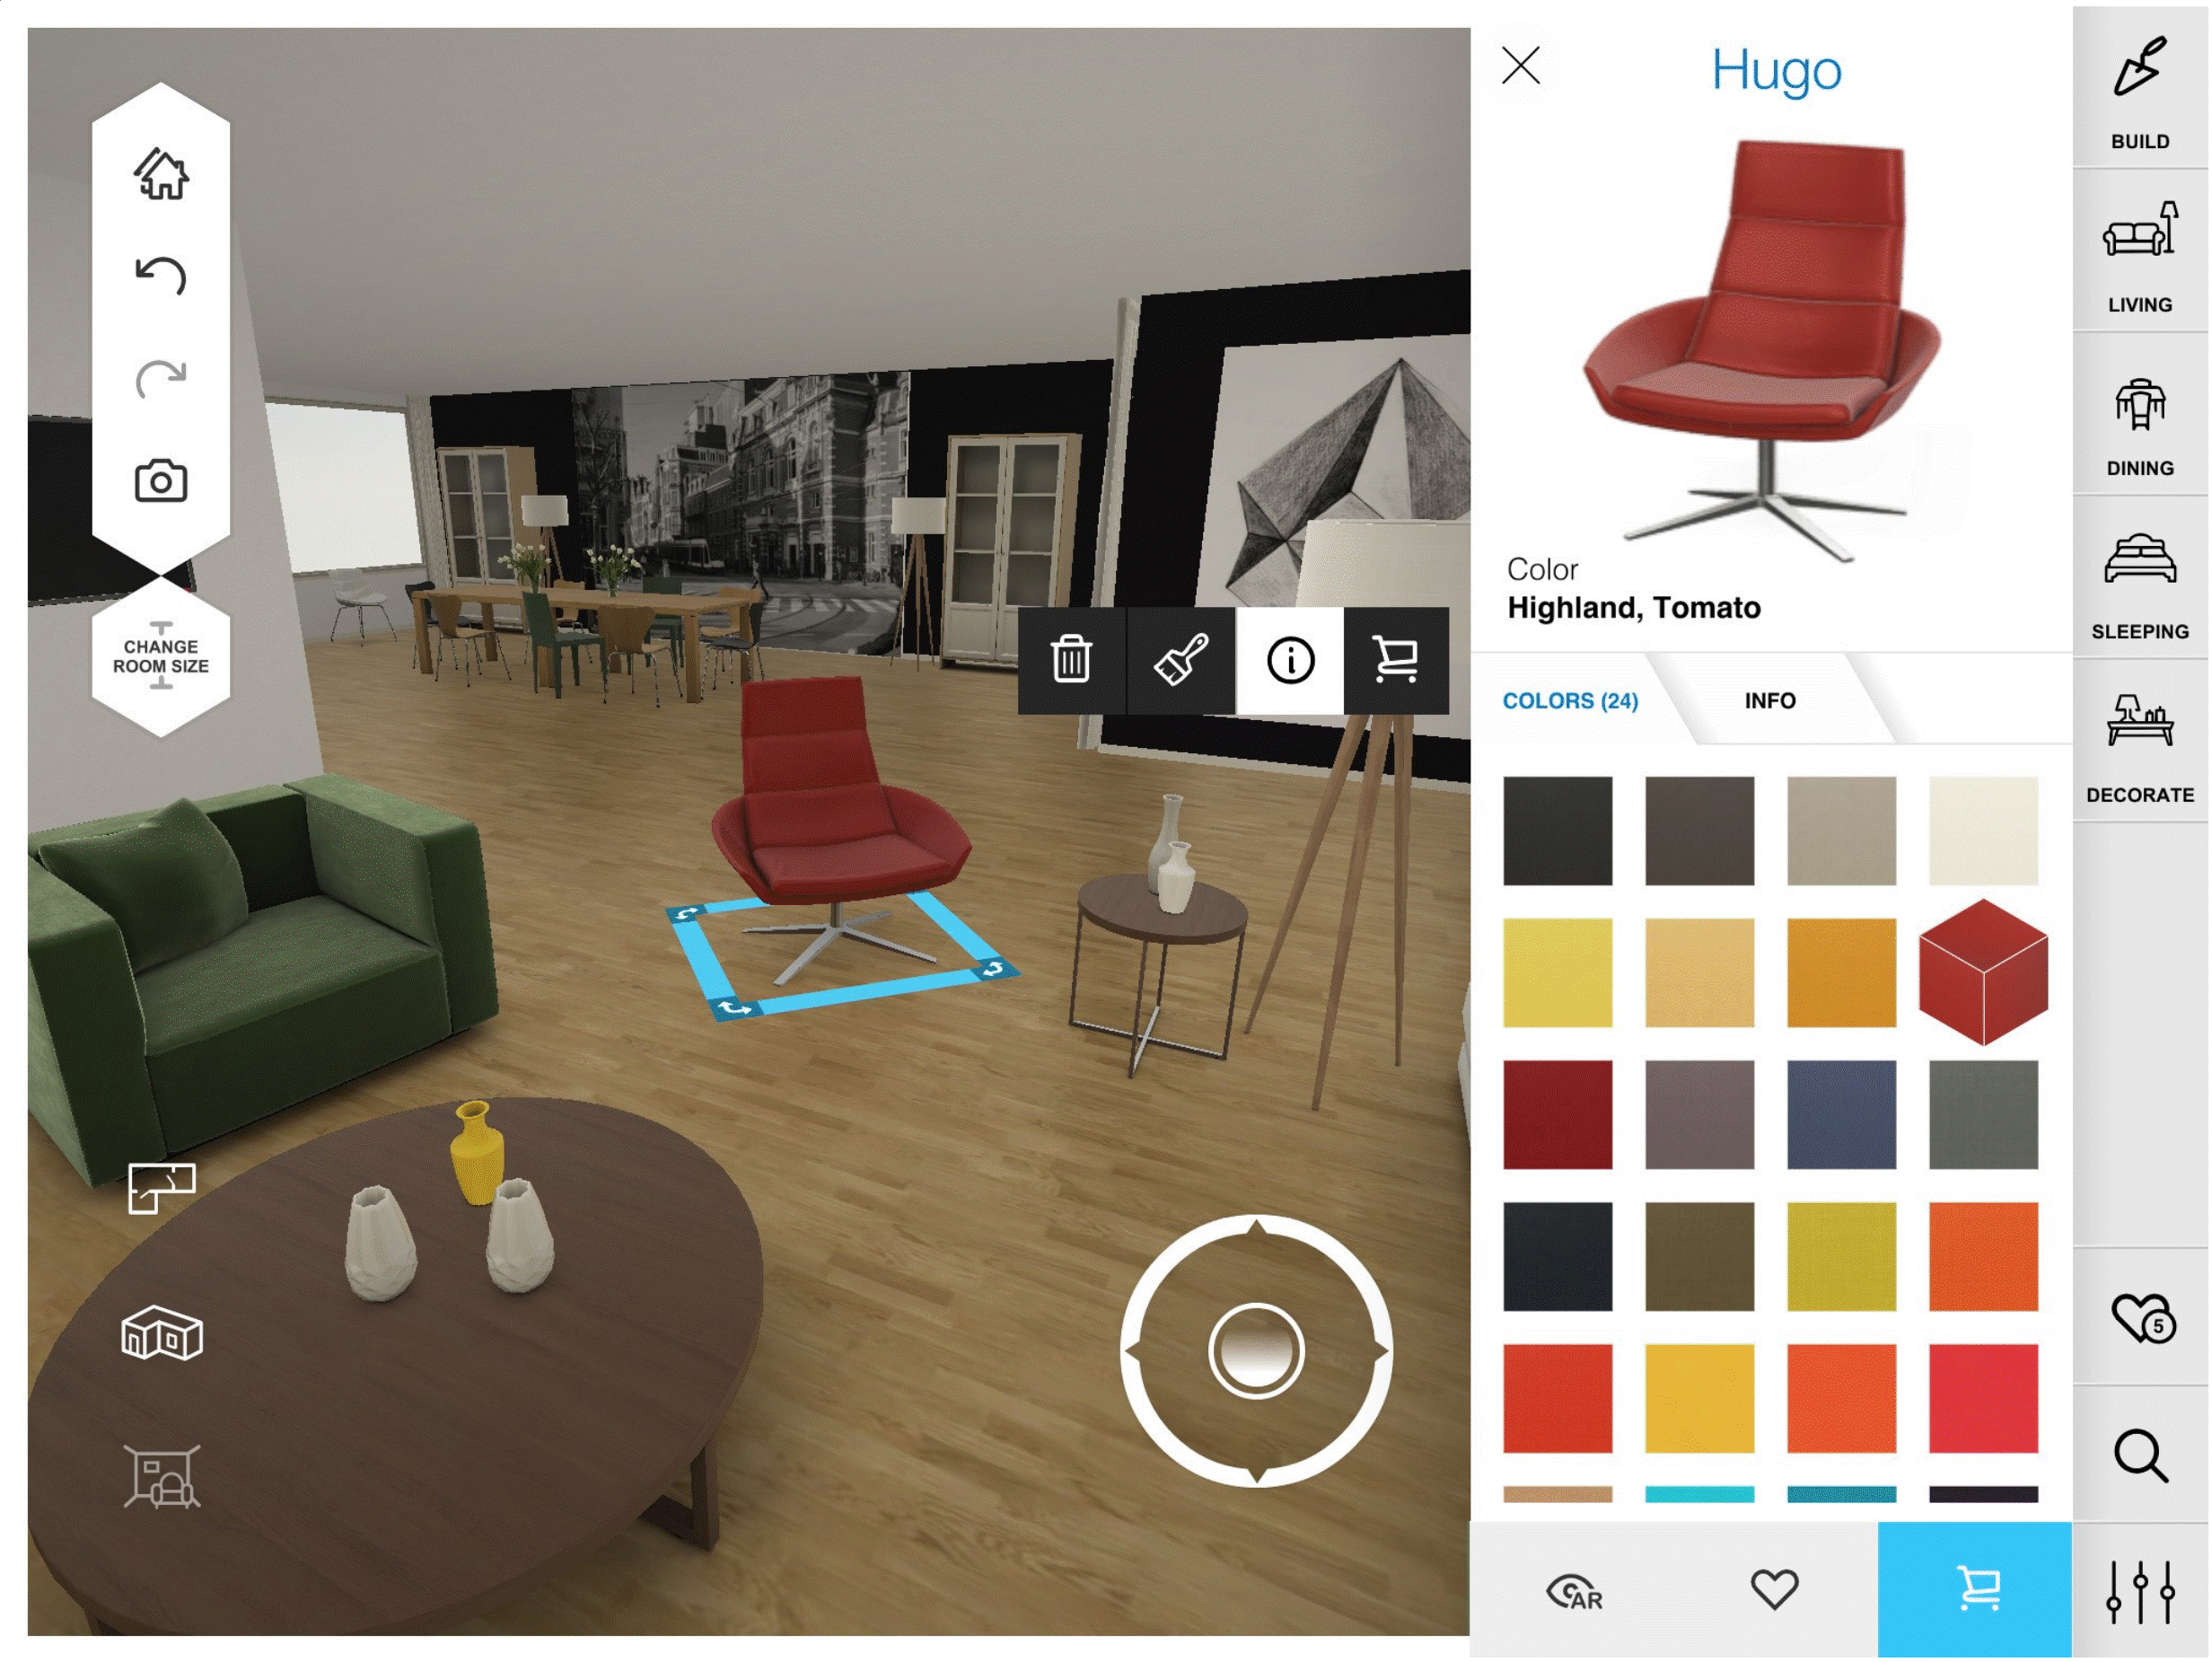 Kuvatõmmis 10: Amikasa äpi abil saab enda toad virtuaalselt ära sisustada, et tekiks parem ettekujutus, kuidas miski oma vahel paigutub ja kokku sobib. (allikas: https://itunes.apple.com/nz/app/amikasa-3d-floor-planner-with-augmented-reality/id918067772?mt=8)